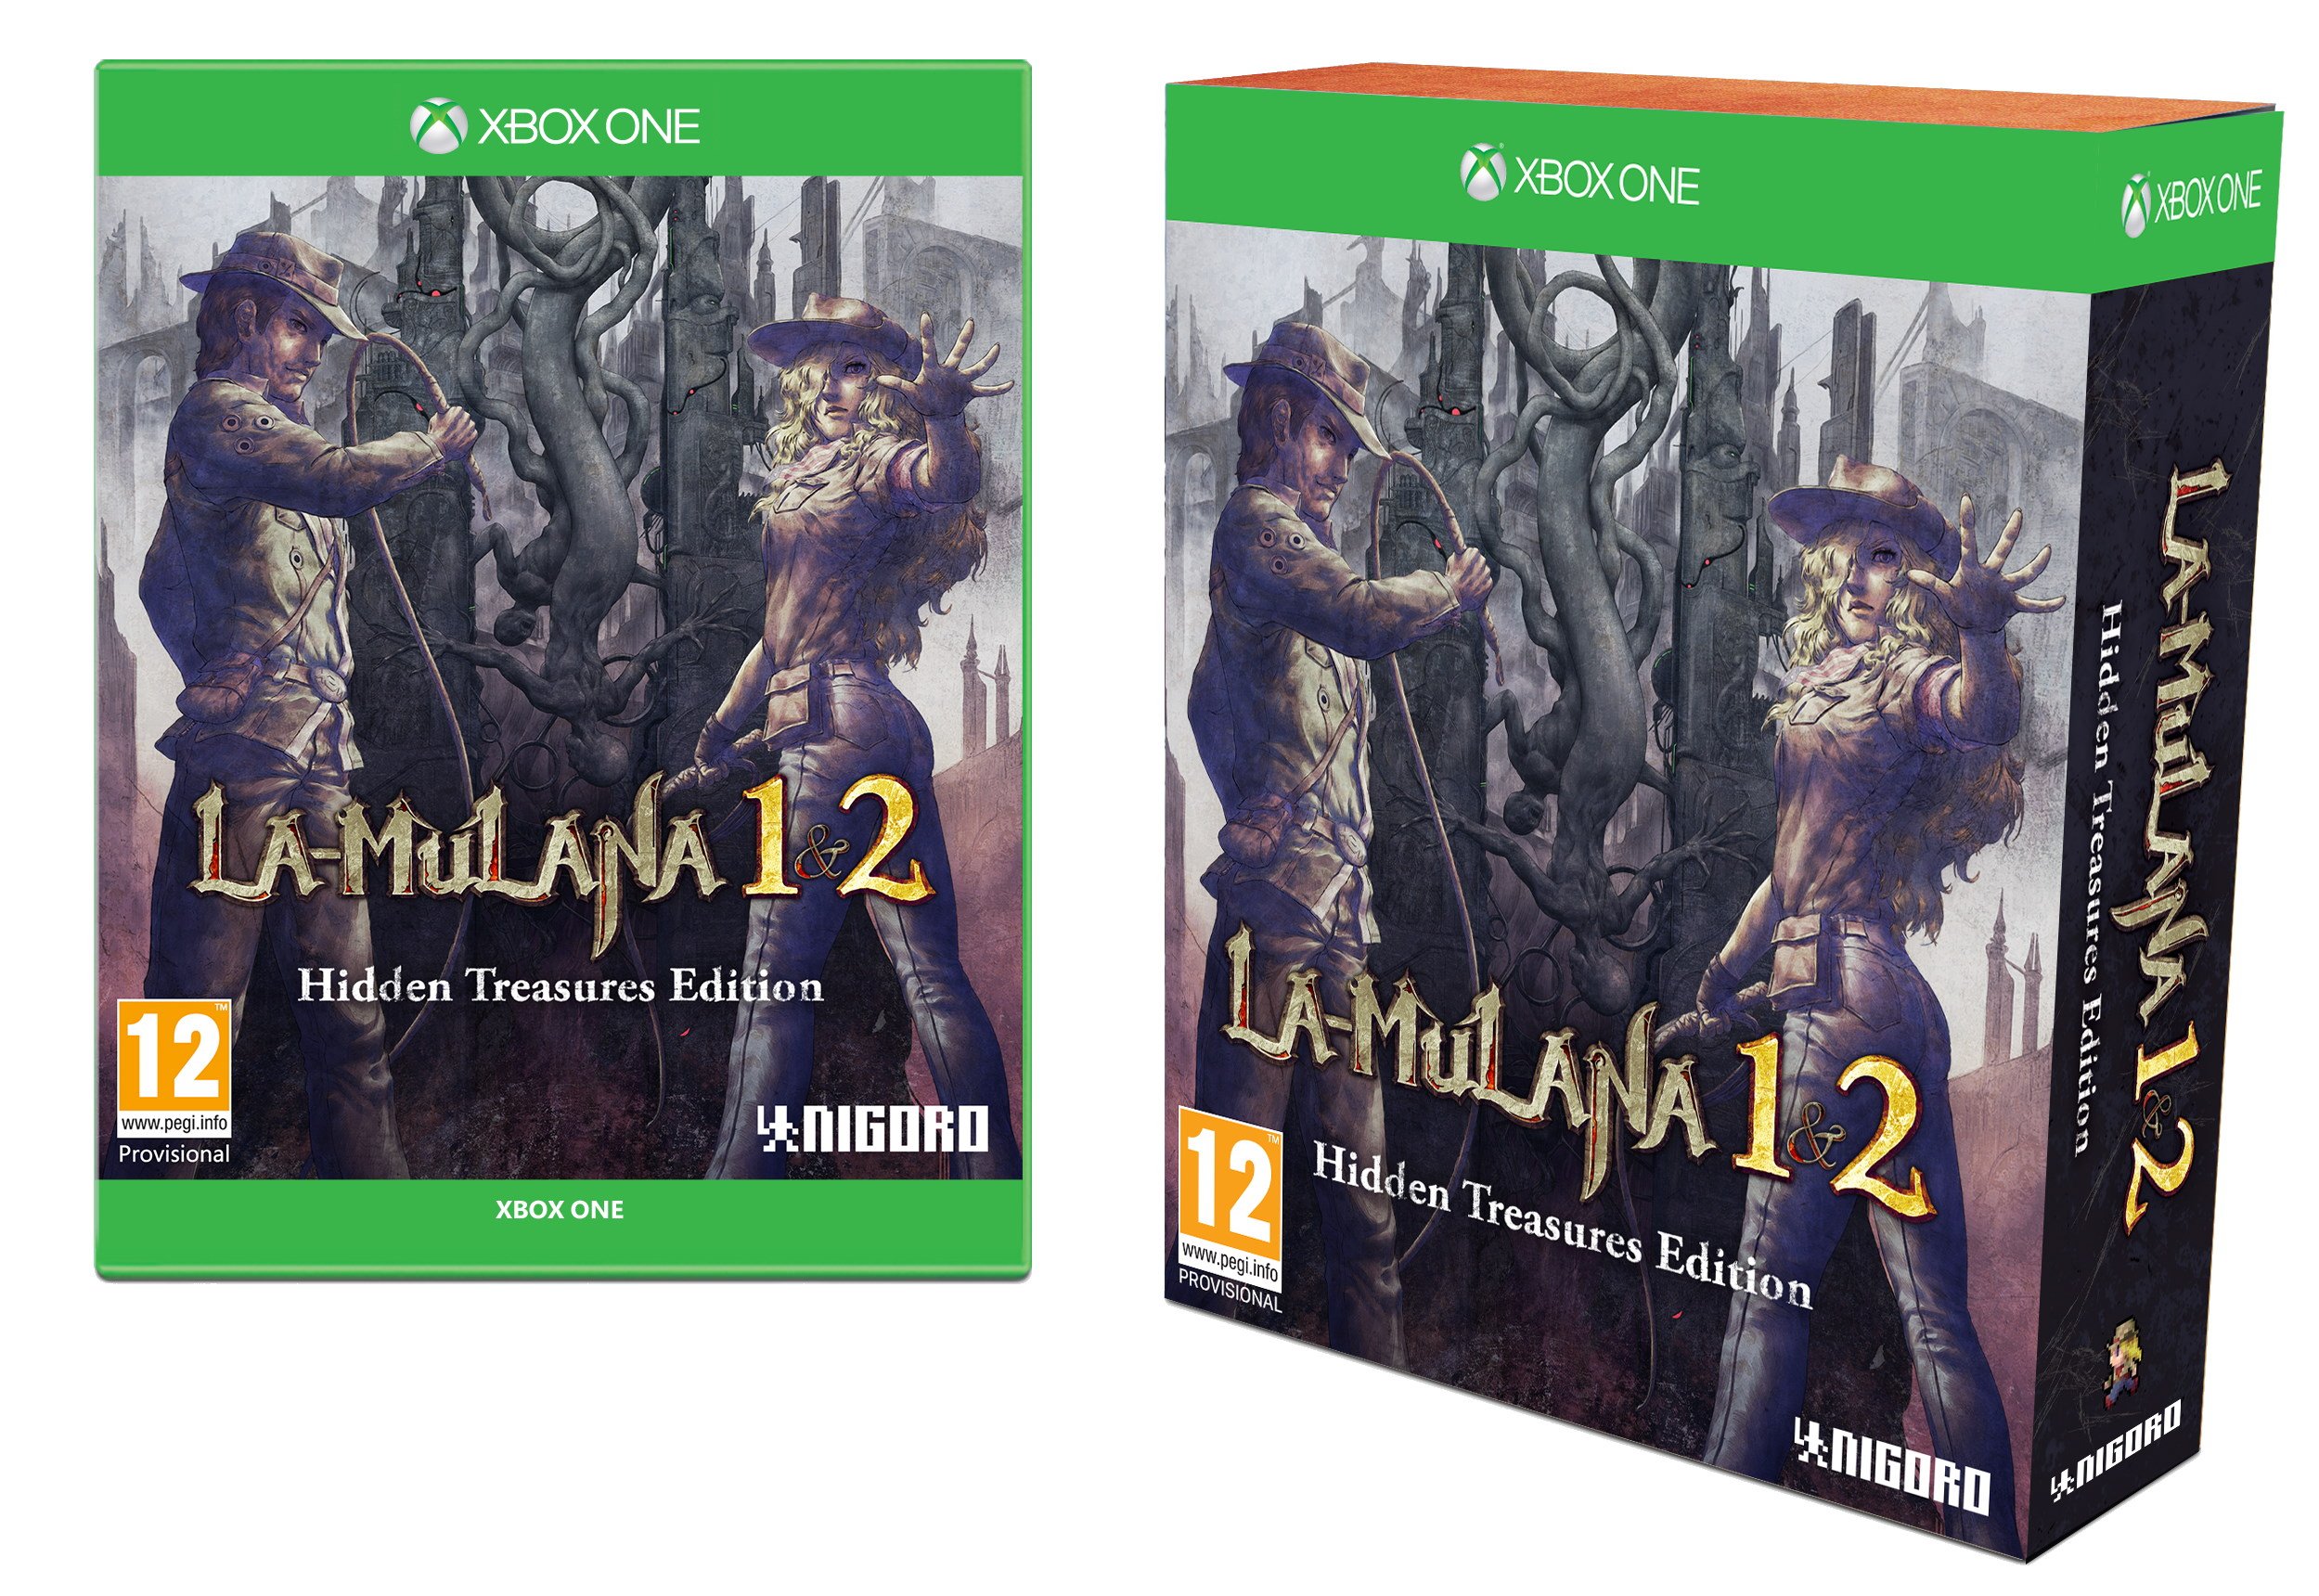 LA-MULANA 1&2: Hidden Treasures Edition